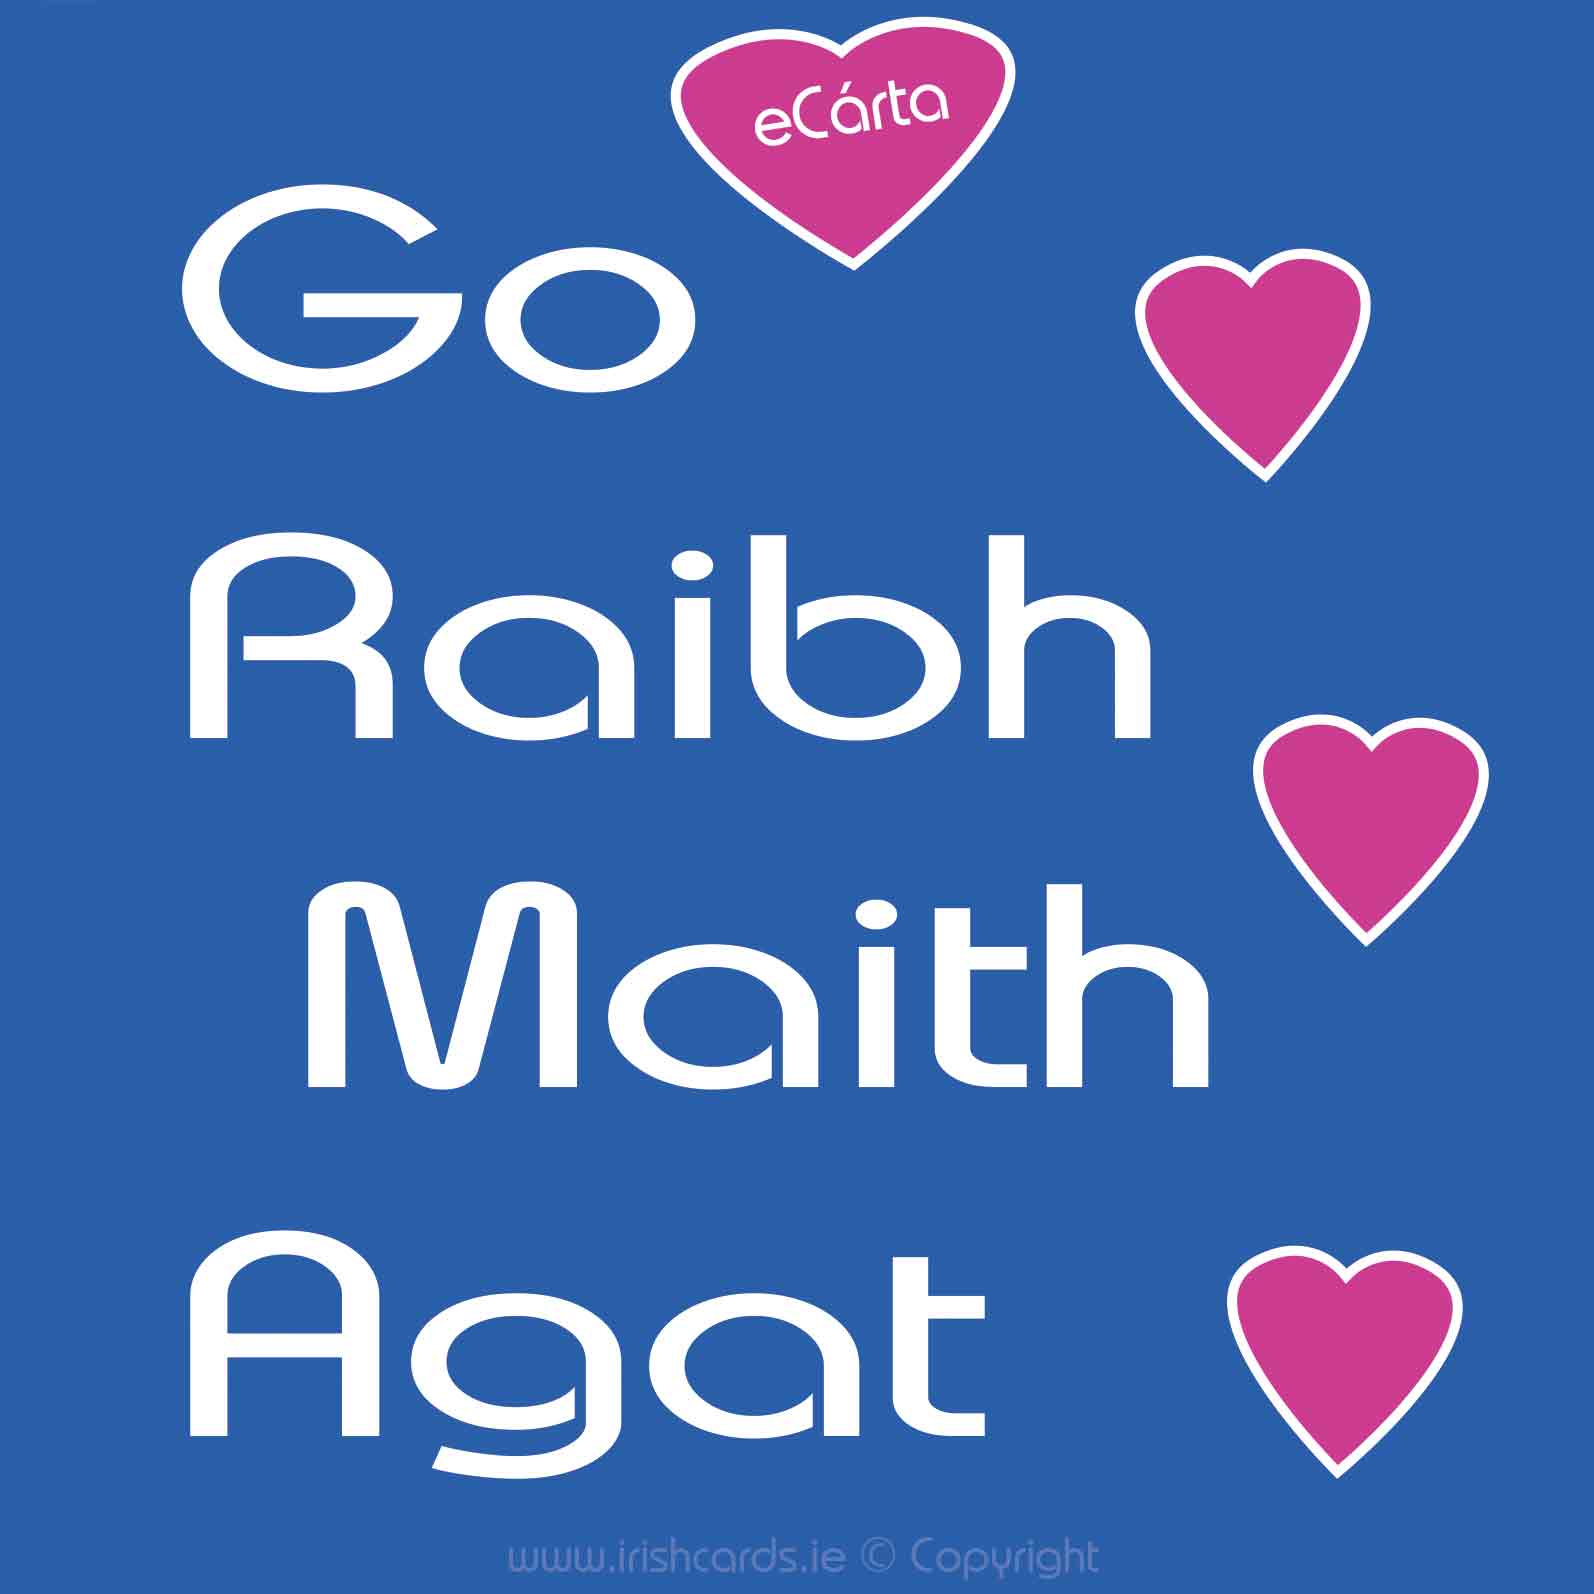 Go-Raibh-Maith-Agat_1